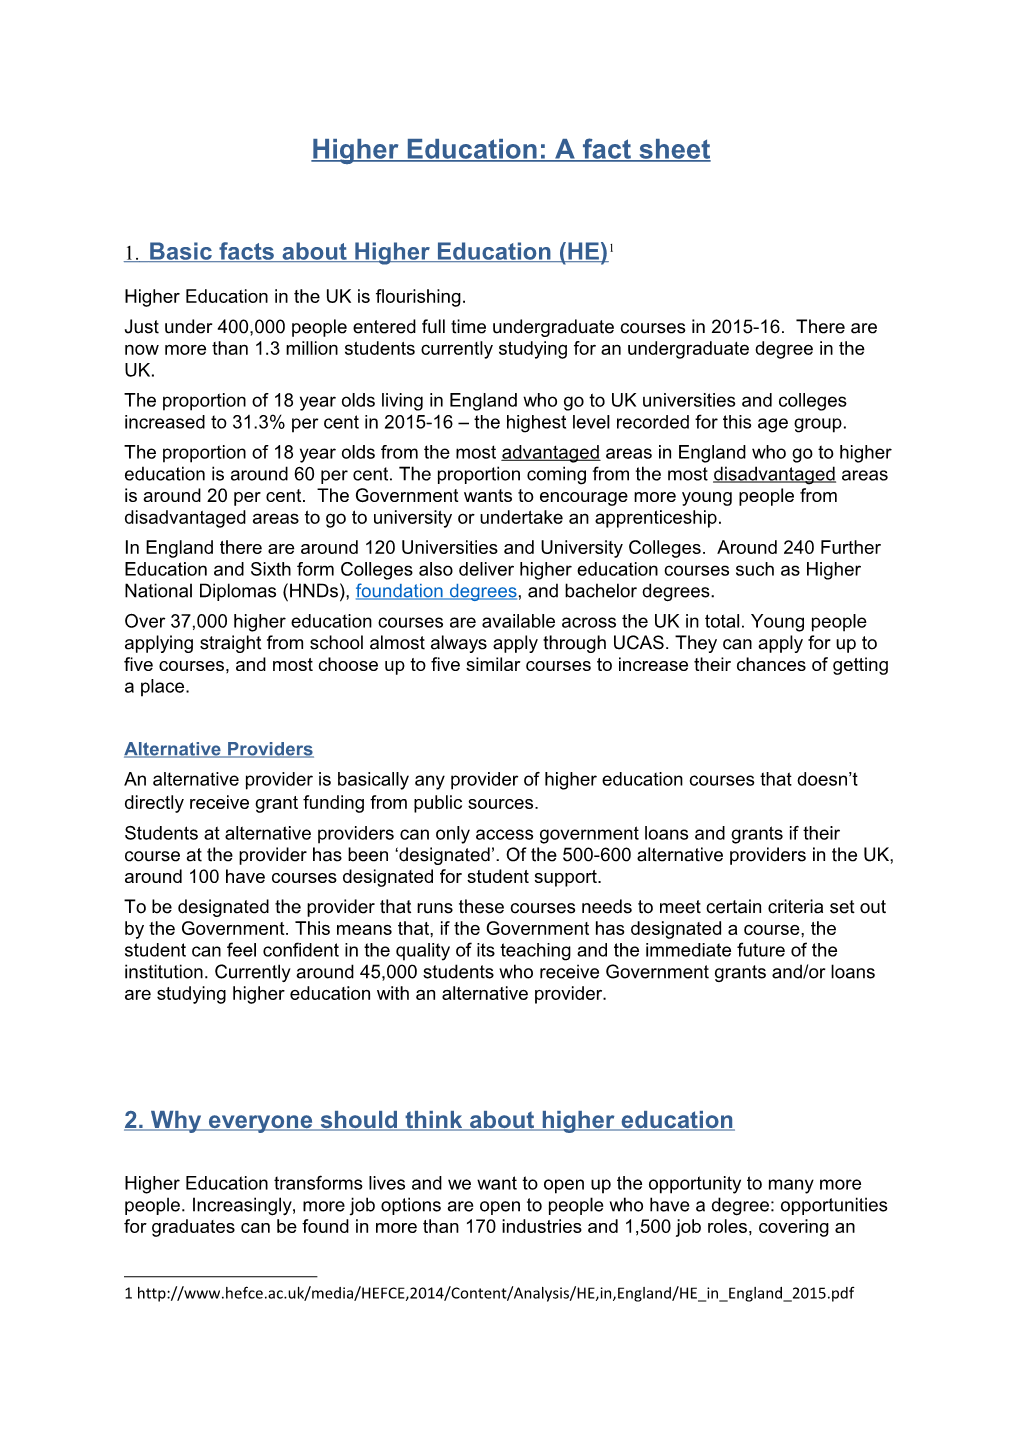 Higher Education: a Fact Sheet